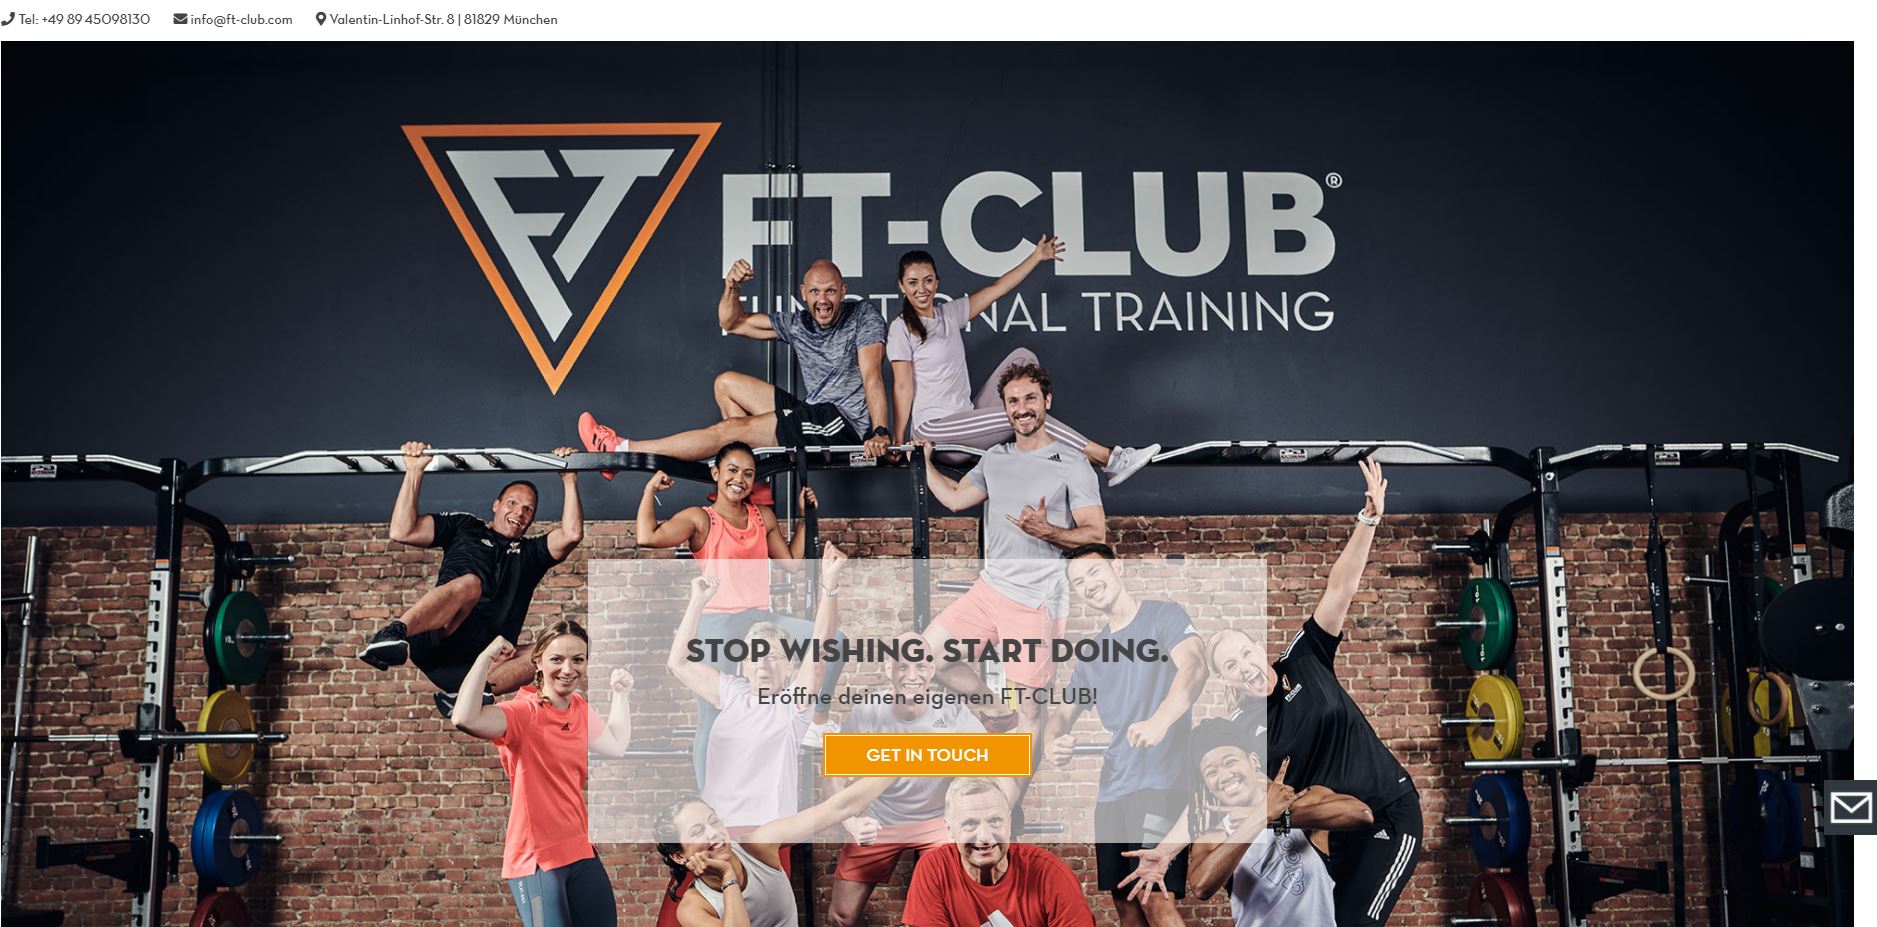 Neue Homepage des FT-CLUB